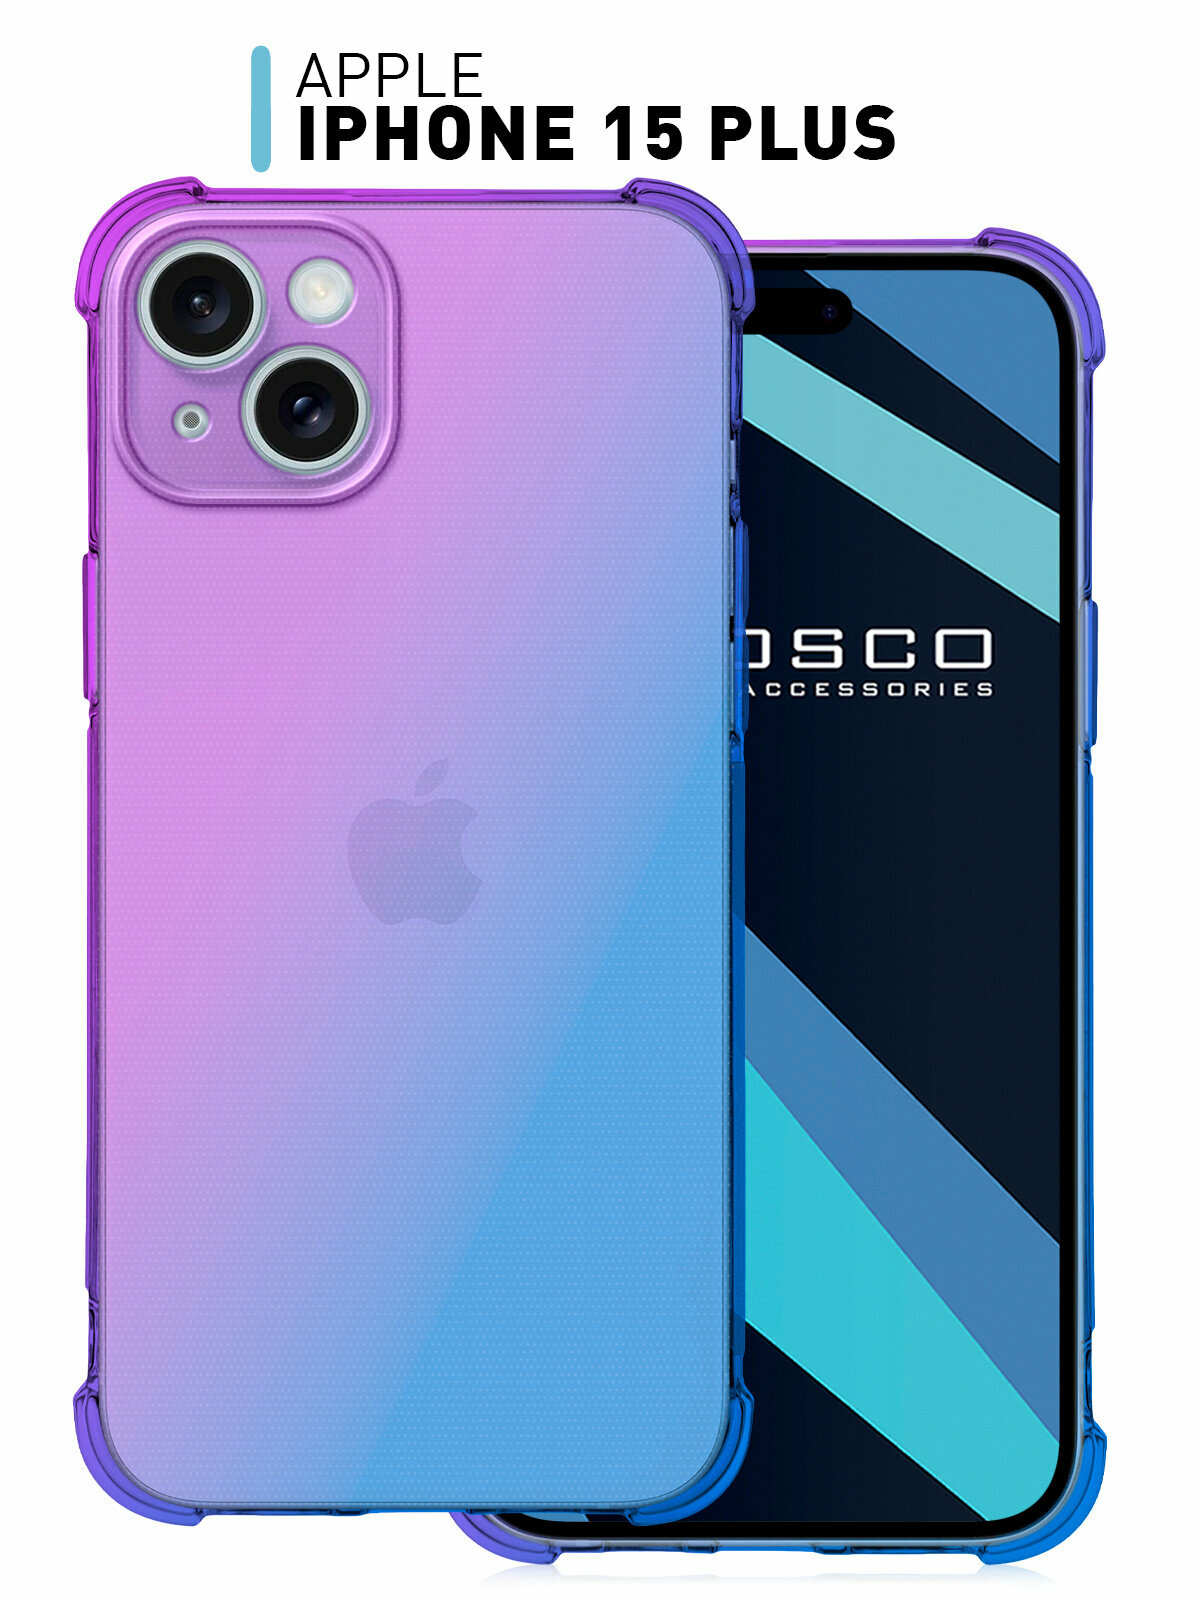 Противоударный чехол на Apple iPhone 15 Plus (Эпл Айфон 15 Плюс) бортик (защита) модуля камер силиконовый чехол прозрачный ROSCO фиолетовый синий